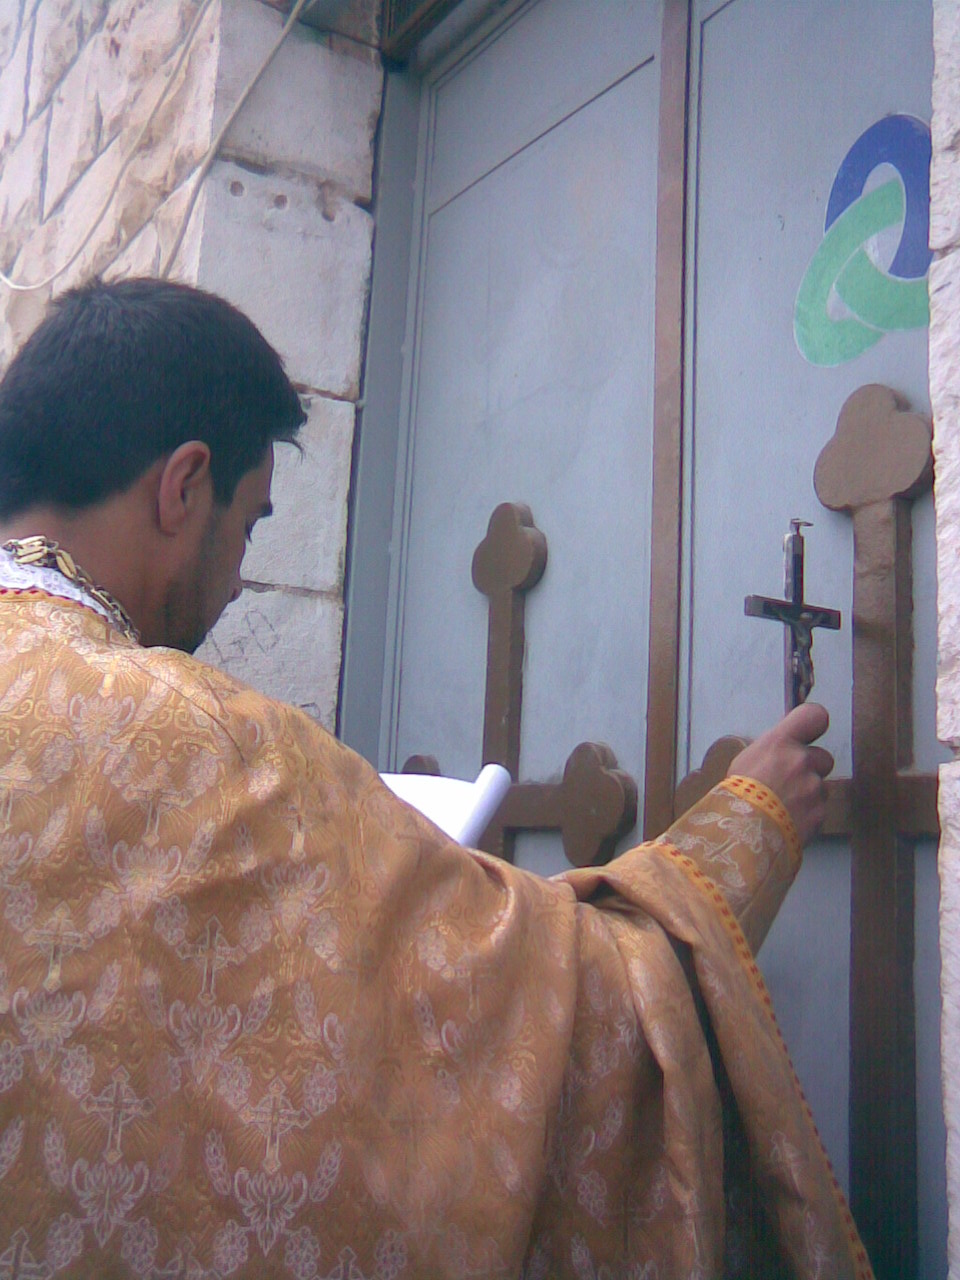 Divine Liturgy in 2008